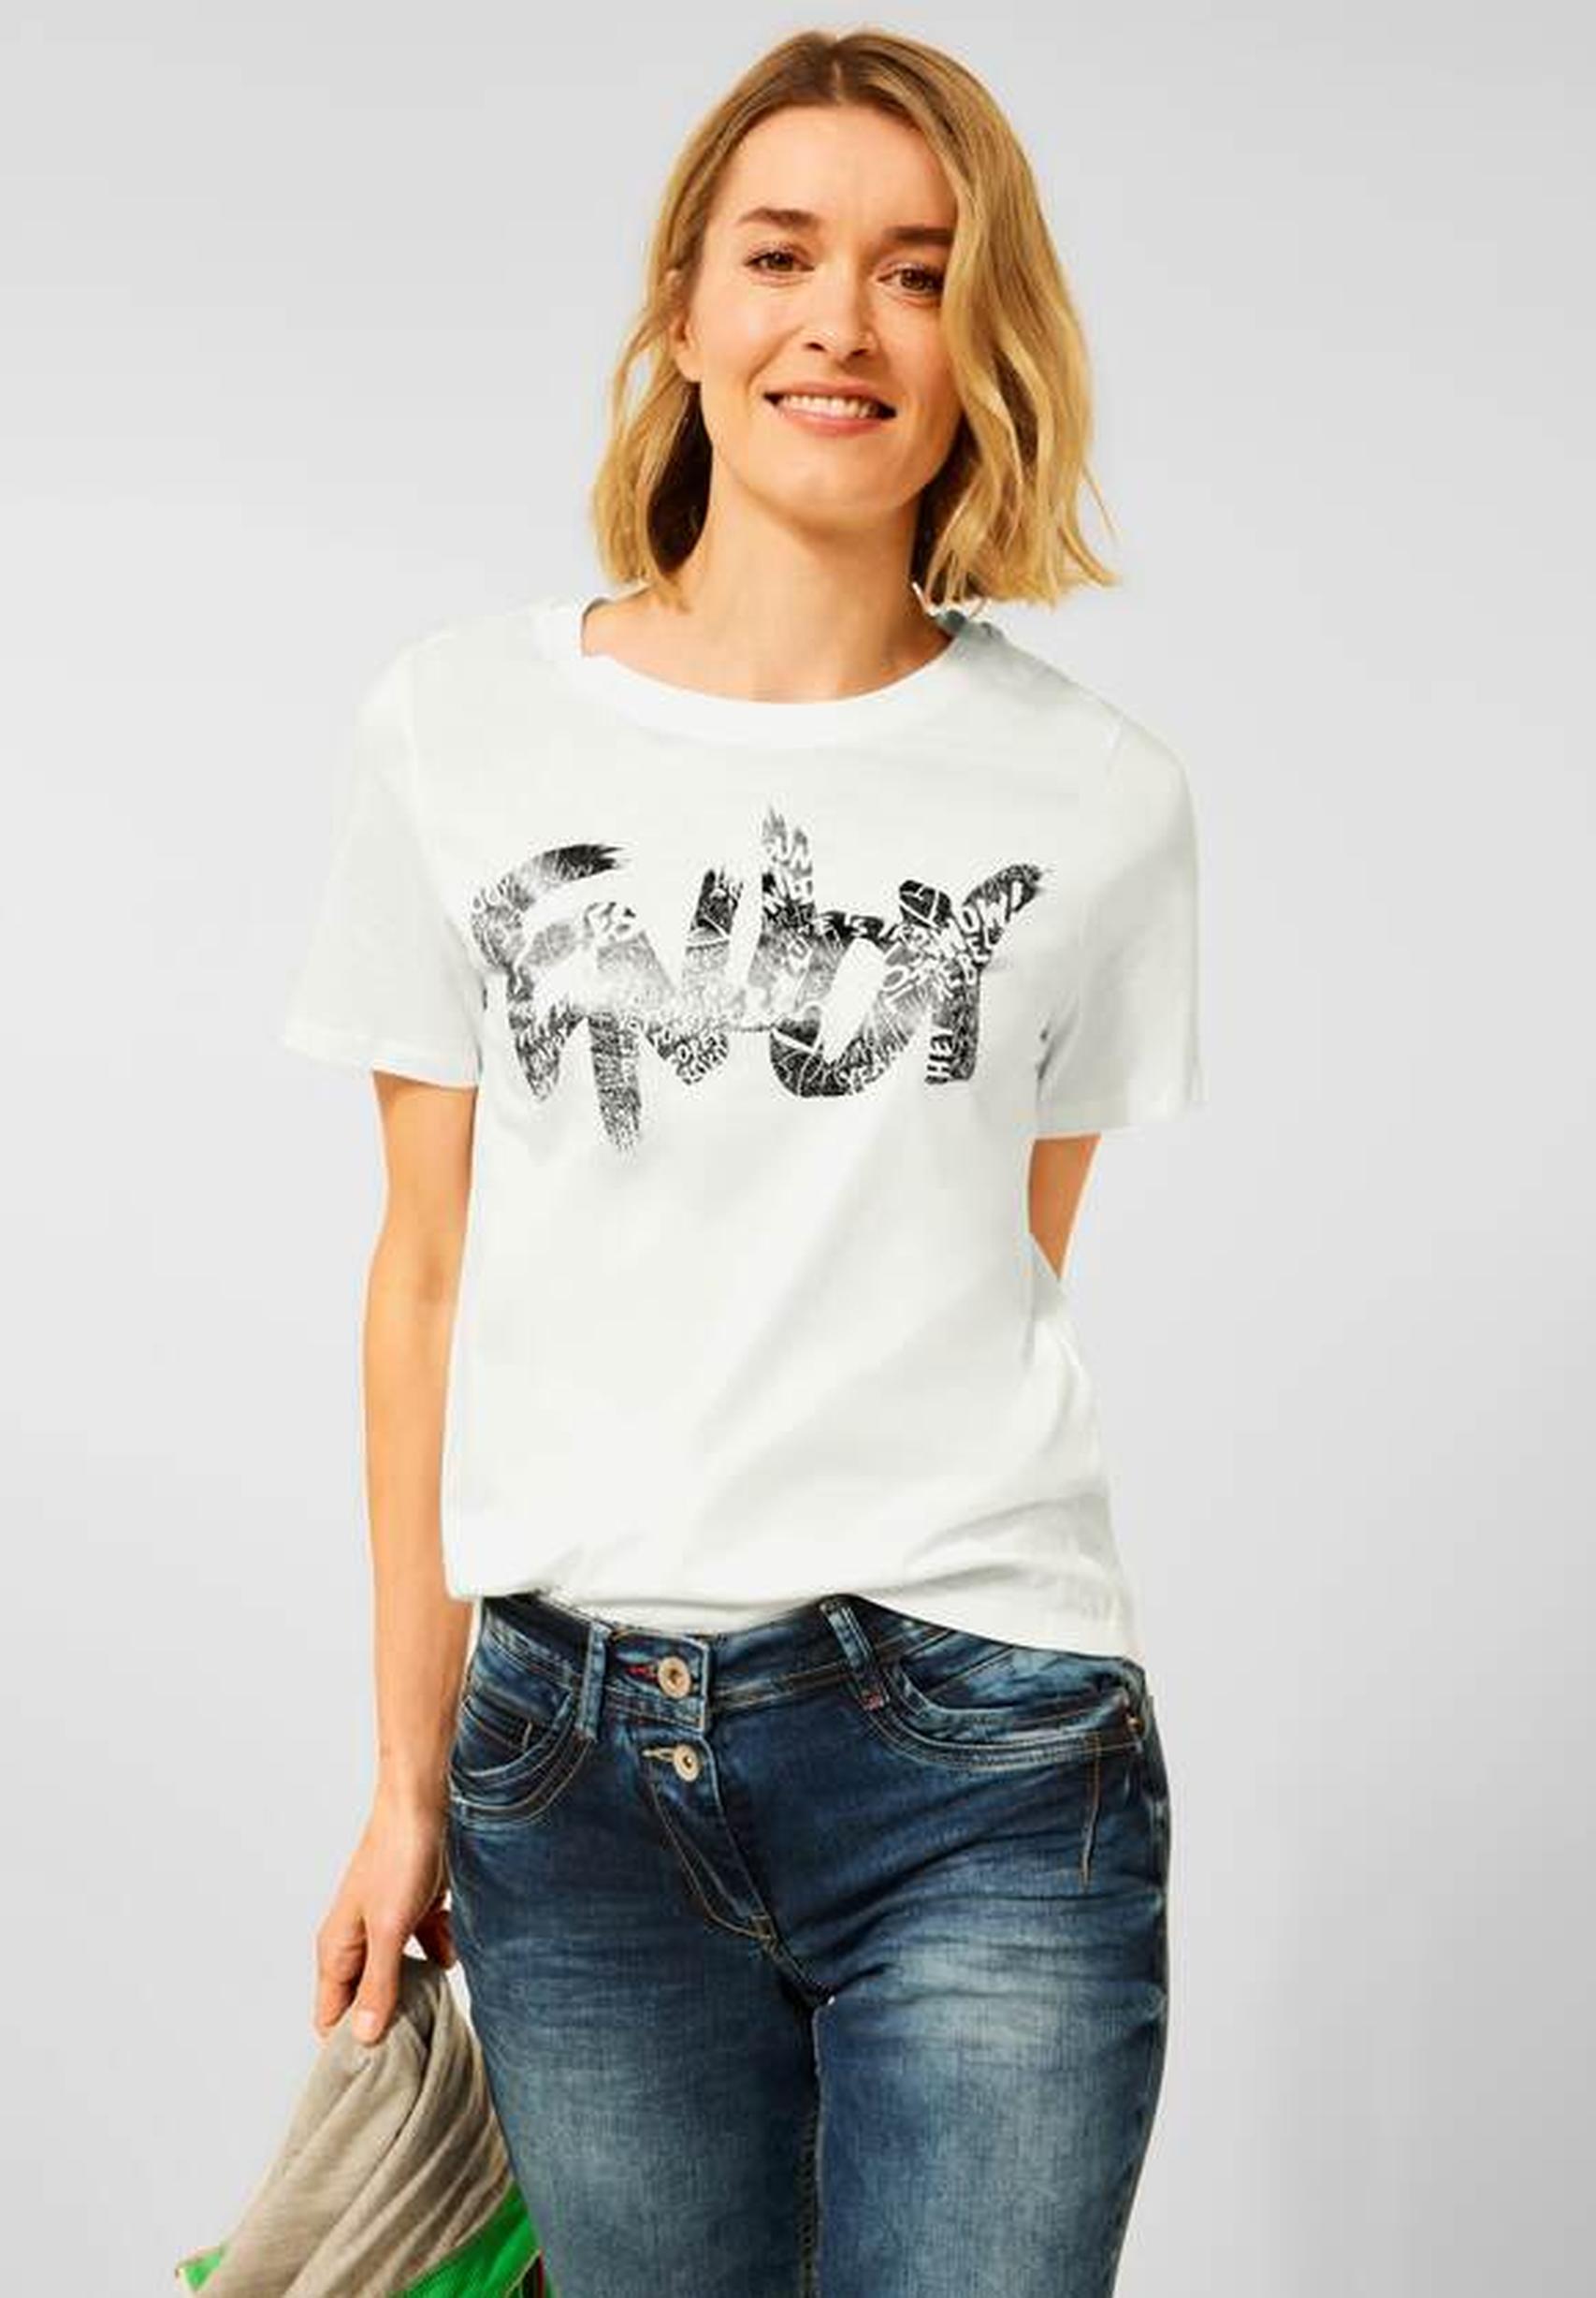 Modisches T-Shirt aus der Kollektion von CECIL in vanilla white - 318468